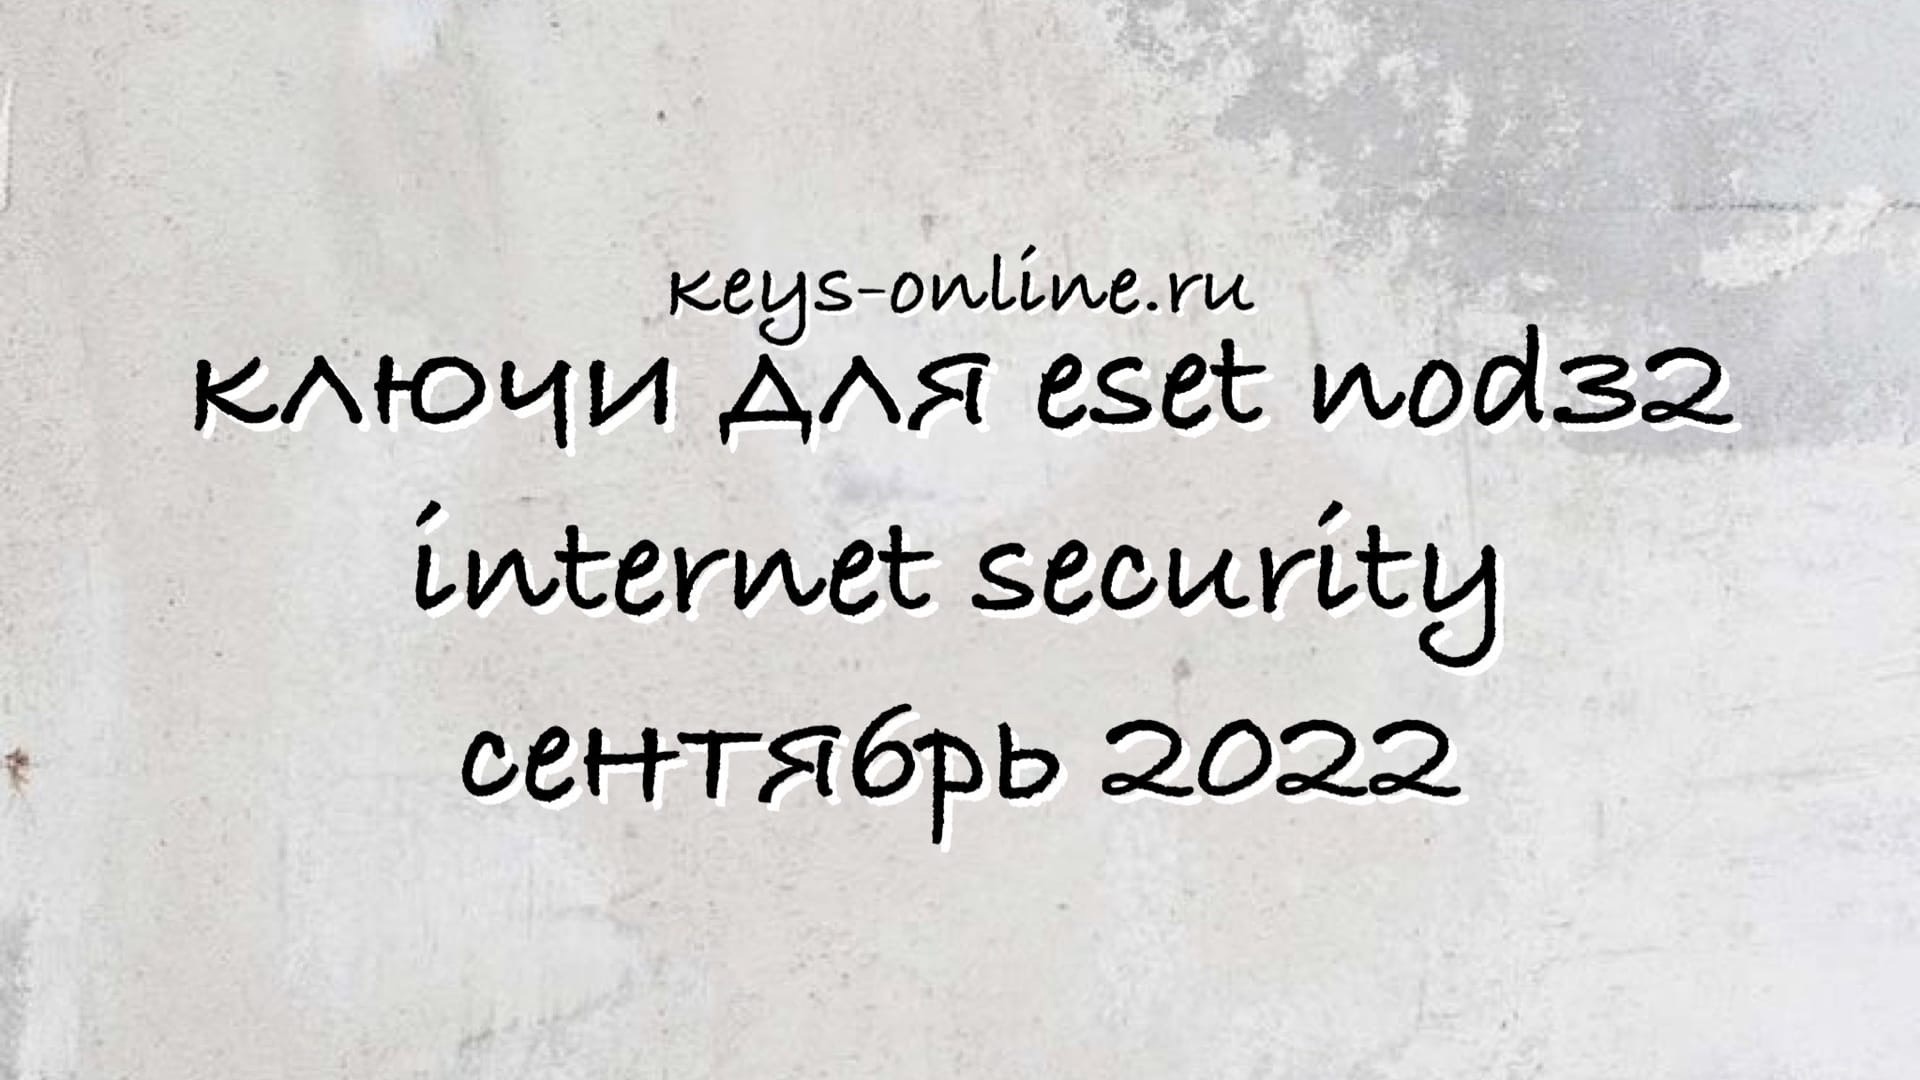 Ключи для eset nod32 internet security сентябрь 2022